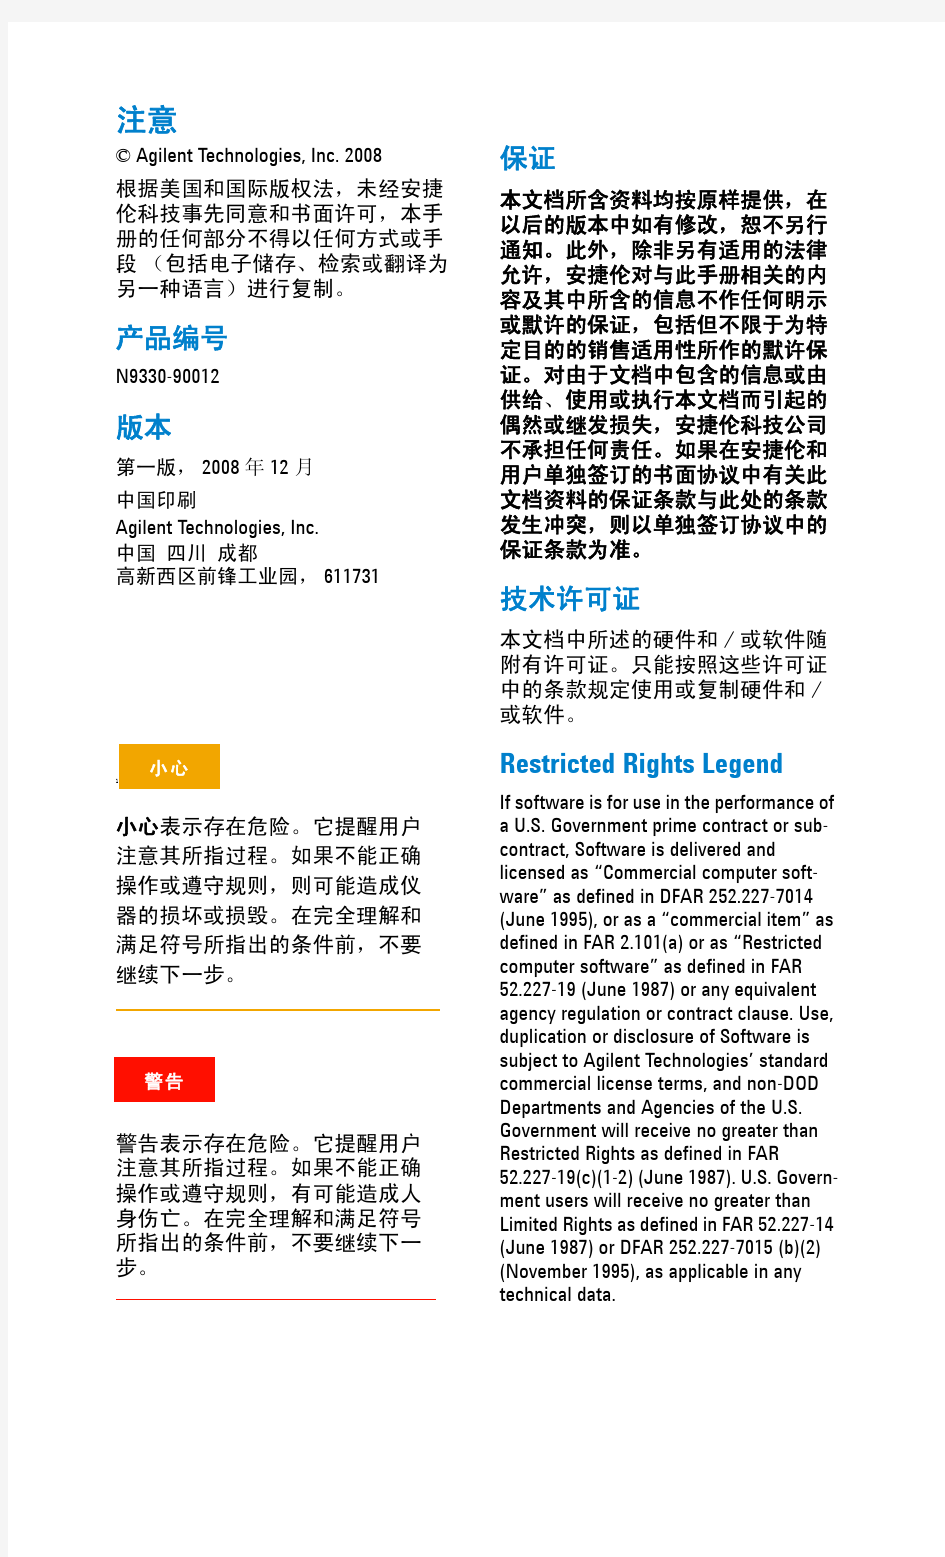 安捷伦N9330B手持式天馈线测试仪用户手册(中文)